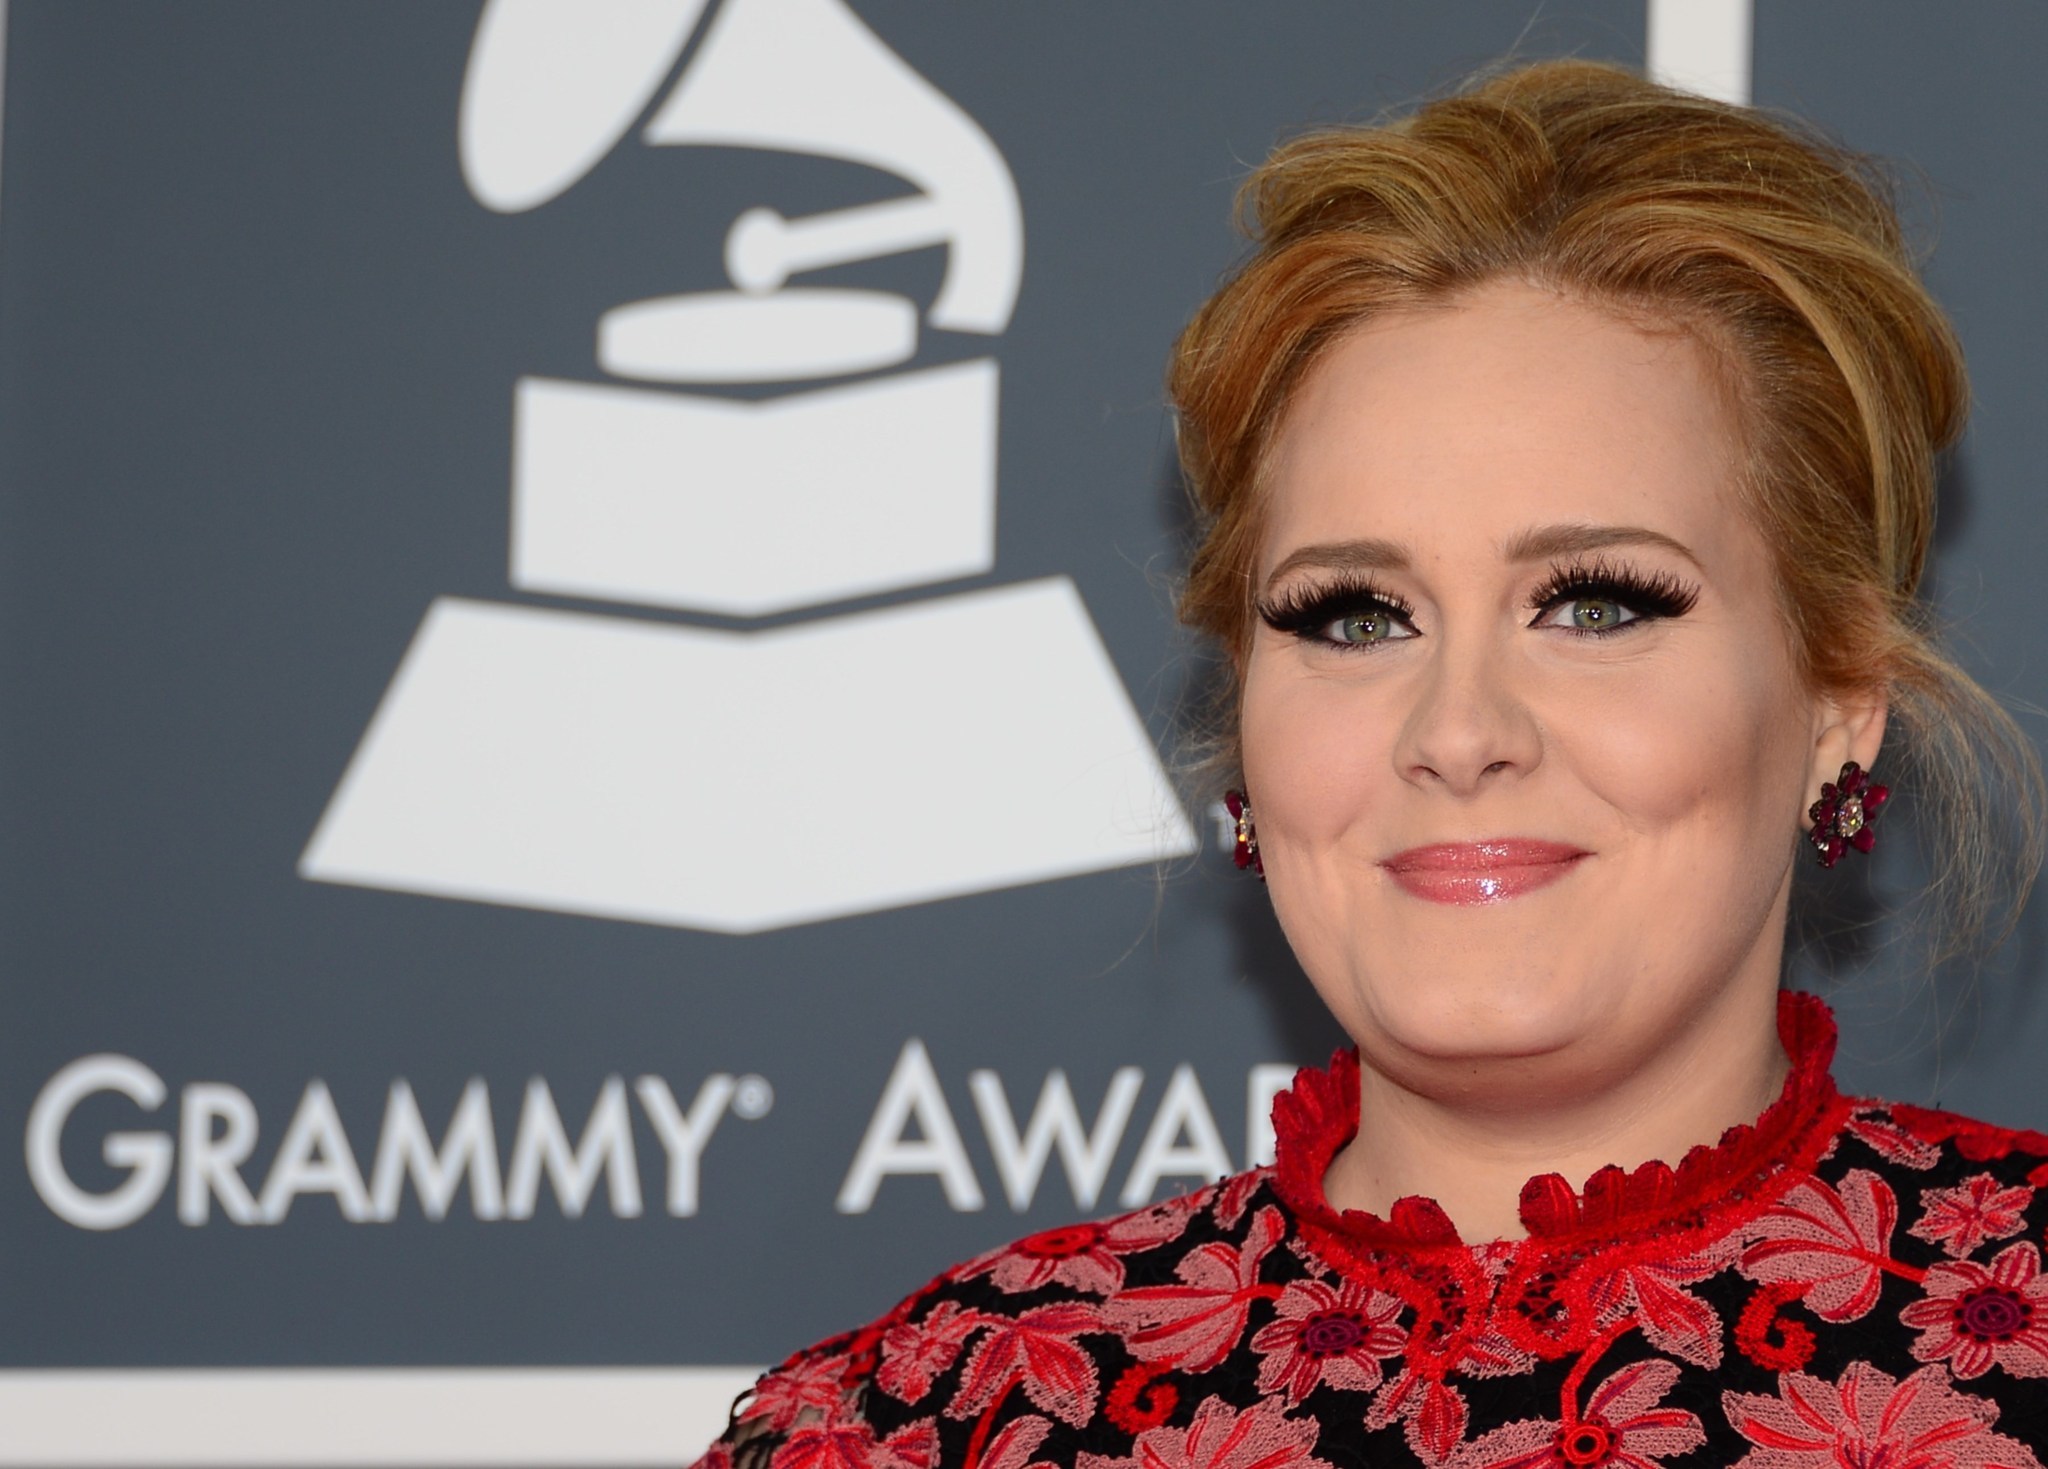 Adele to release new album called '25' on Nov. 20 - Chicago Tribune2048 x 1469